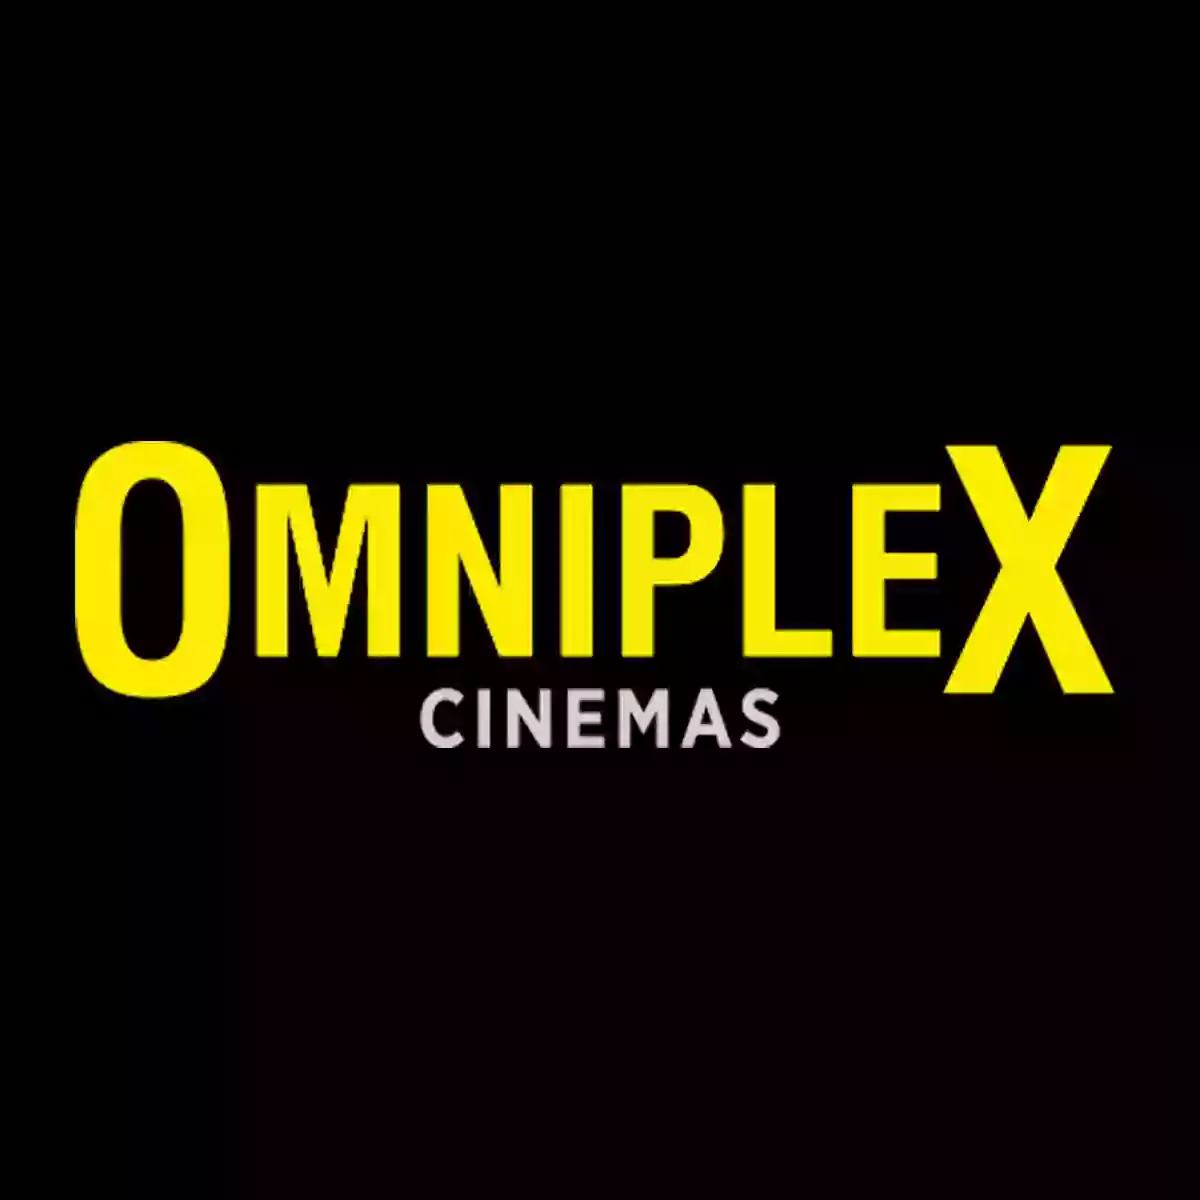 Omniplex Cinema Nenagh